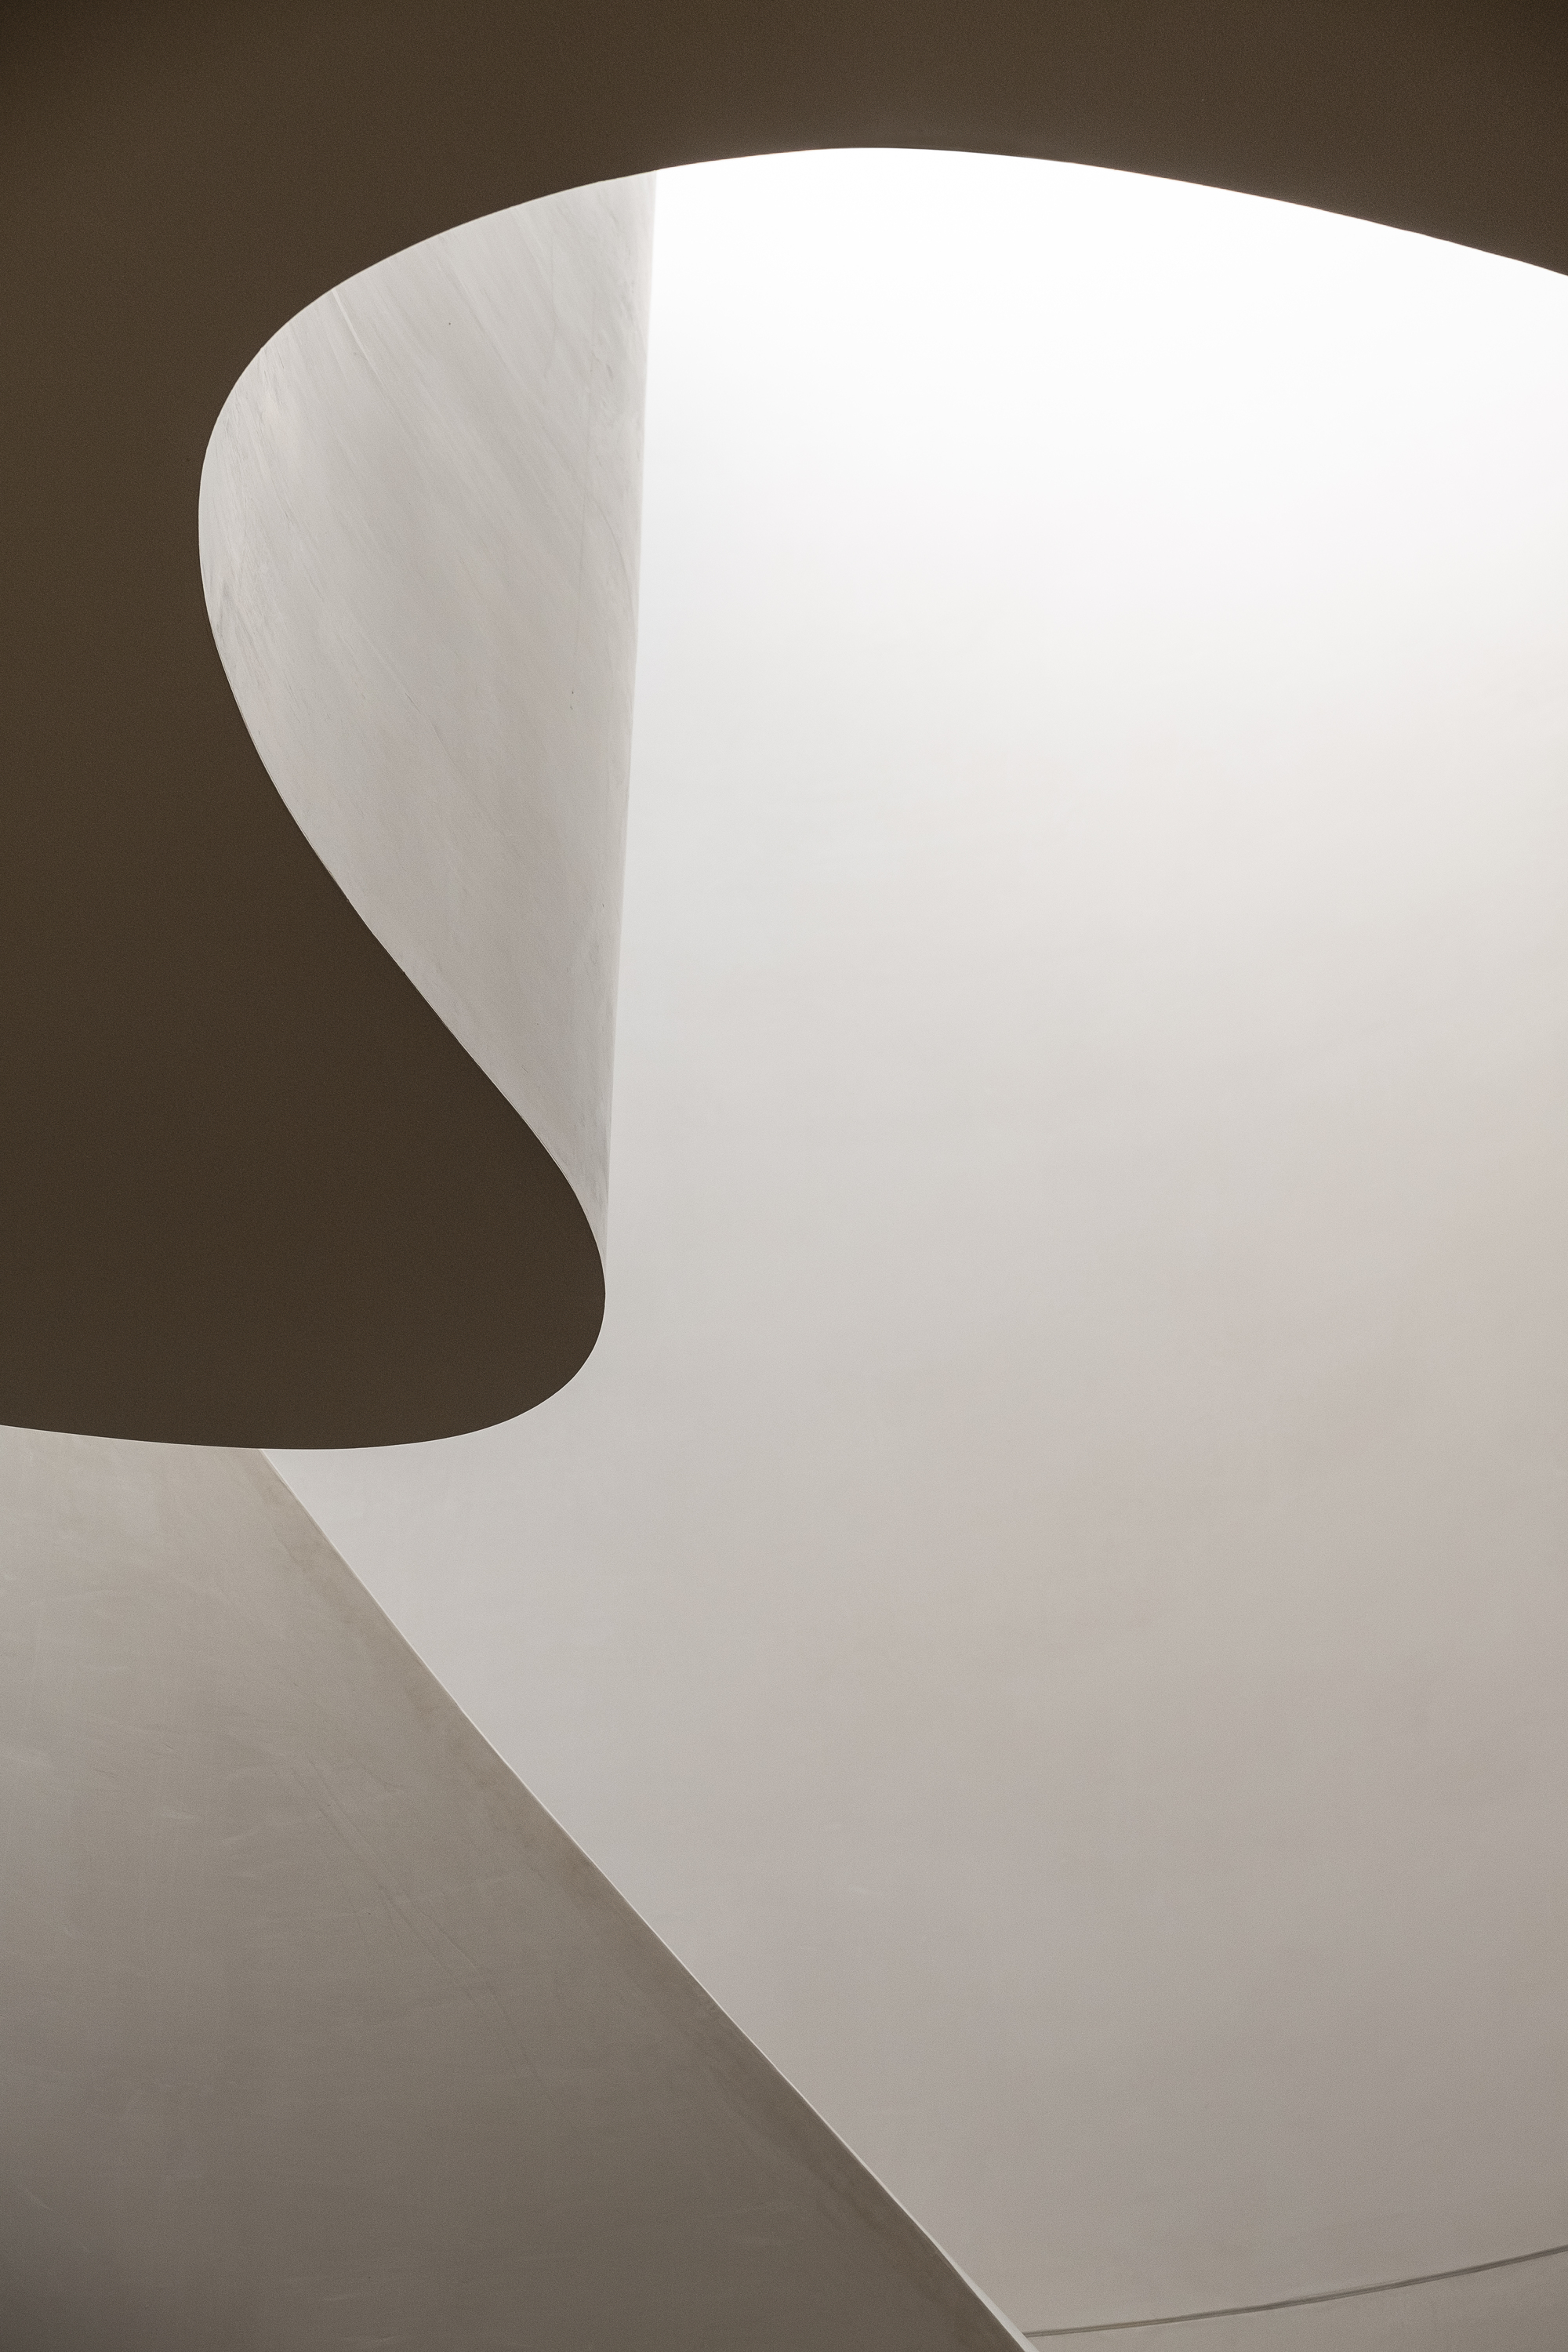 图片[2]|白桦树别墅 / Susi Leeton Architects & Interior|ART-Arrakis | 建筑室内设计的创新与灵感